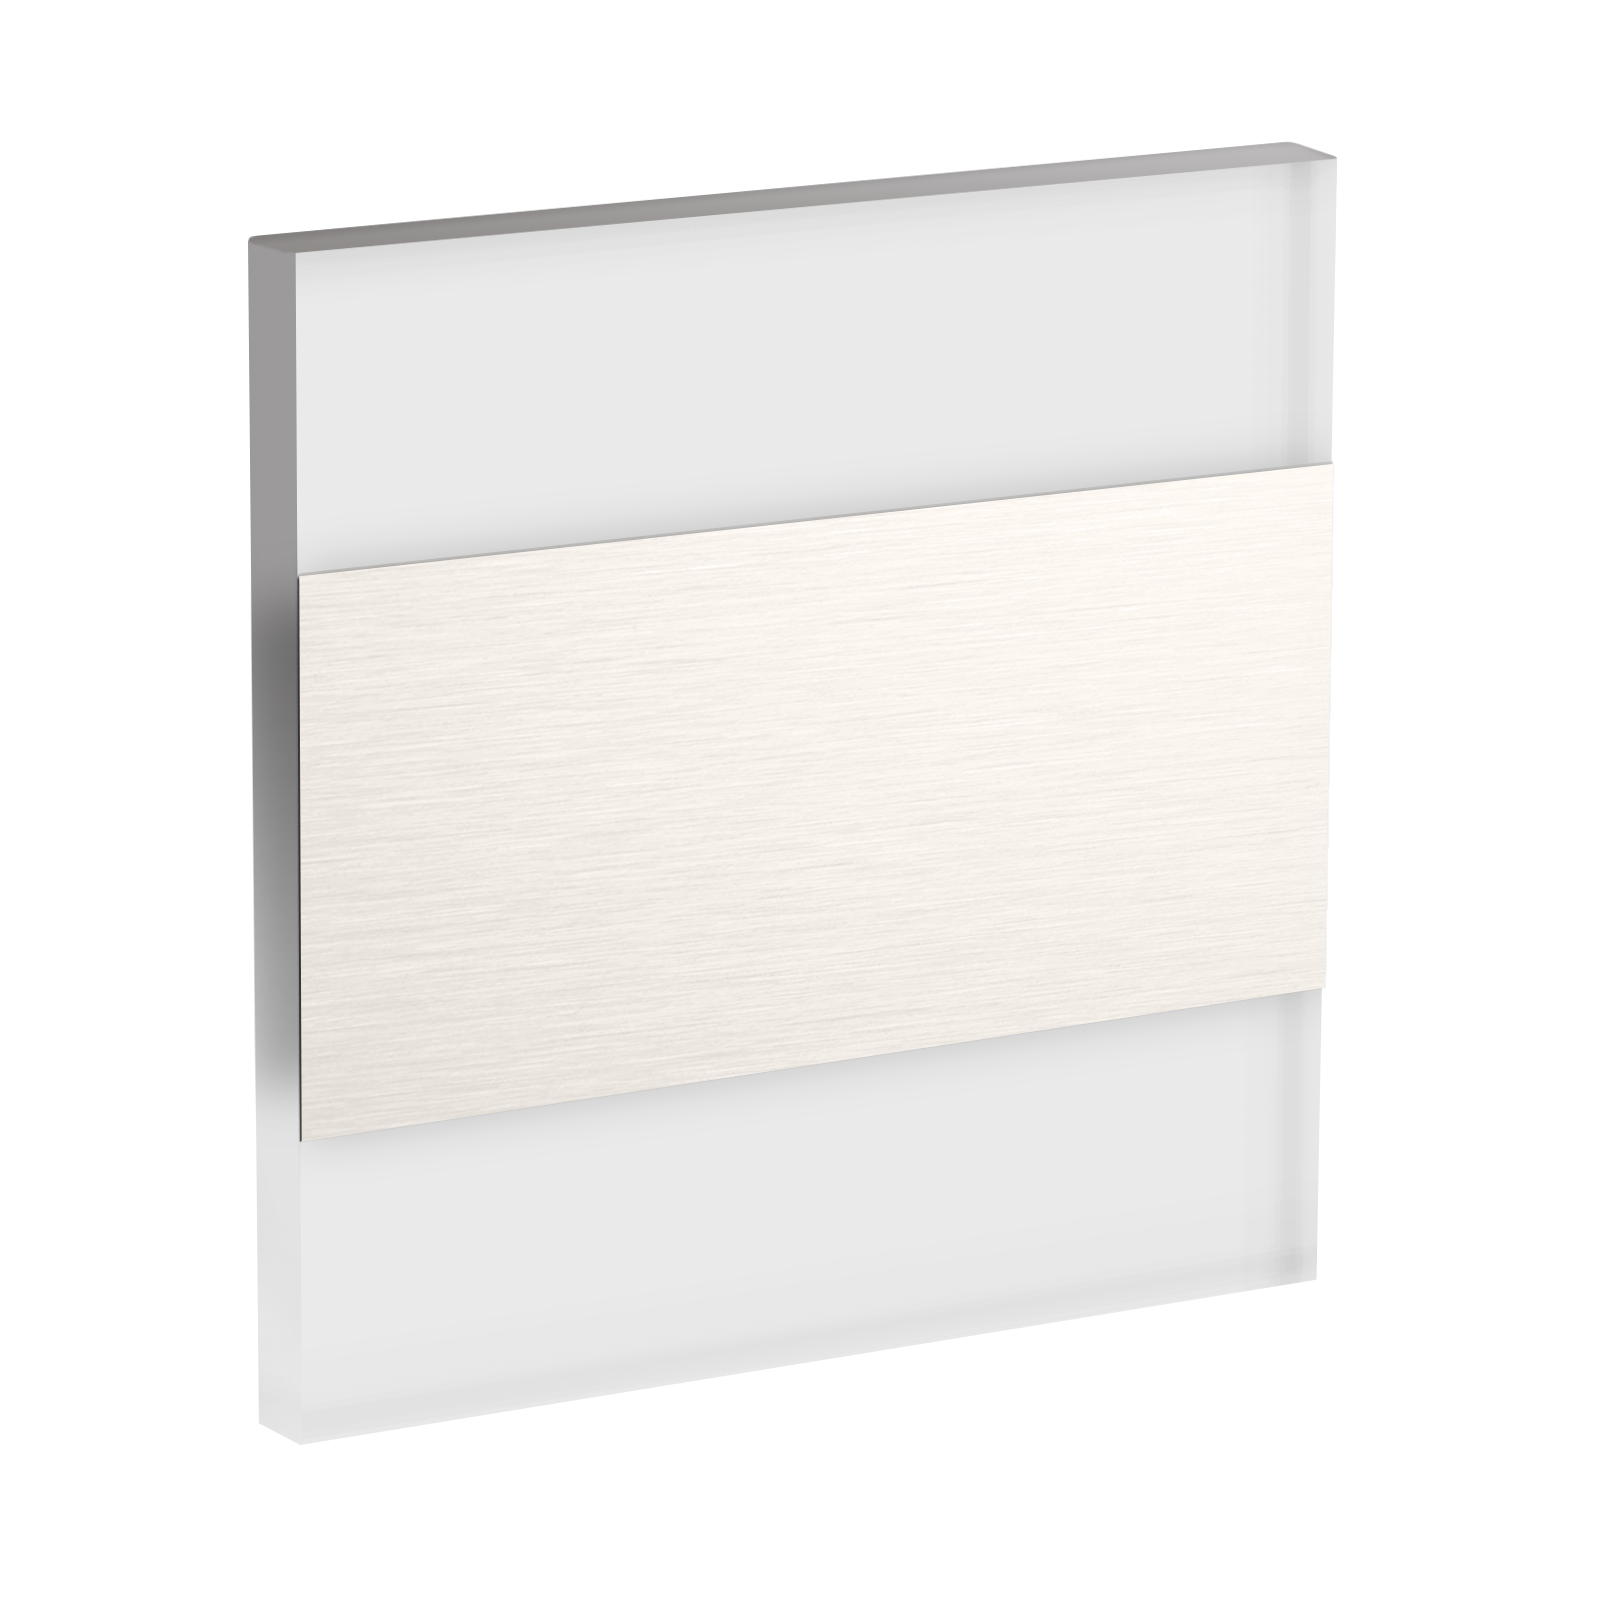 LED Wandeinbaustrahler Treppenlicht Wandeinbauleuchte warmweiß flach Satinglas quadratisch WB7 230V